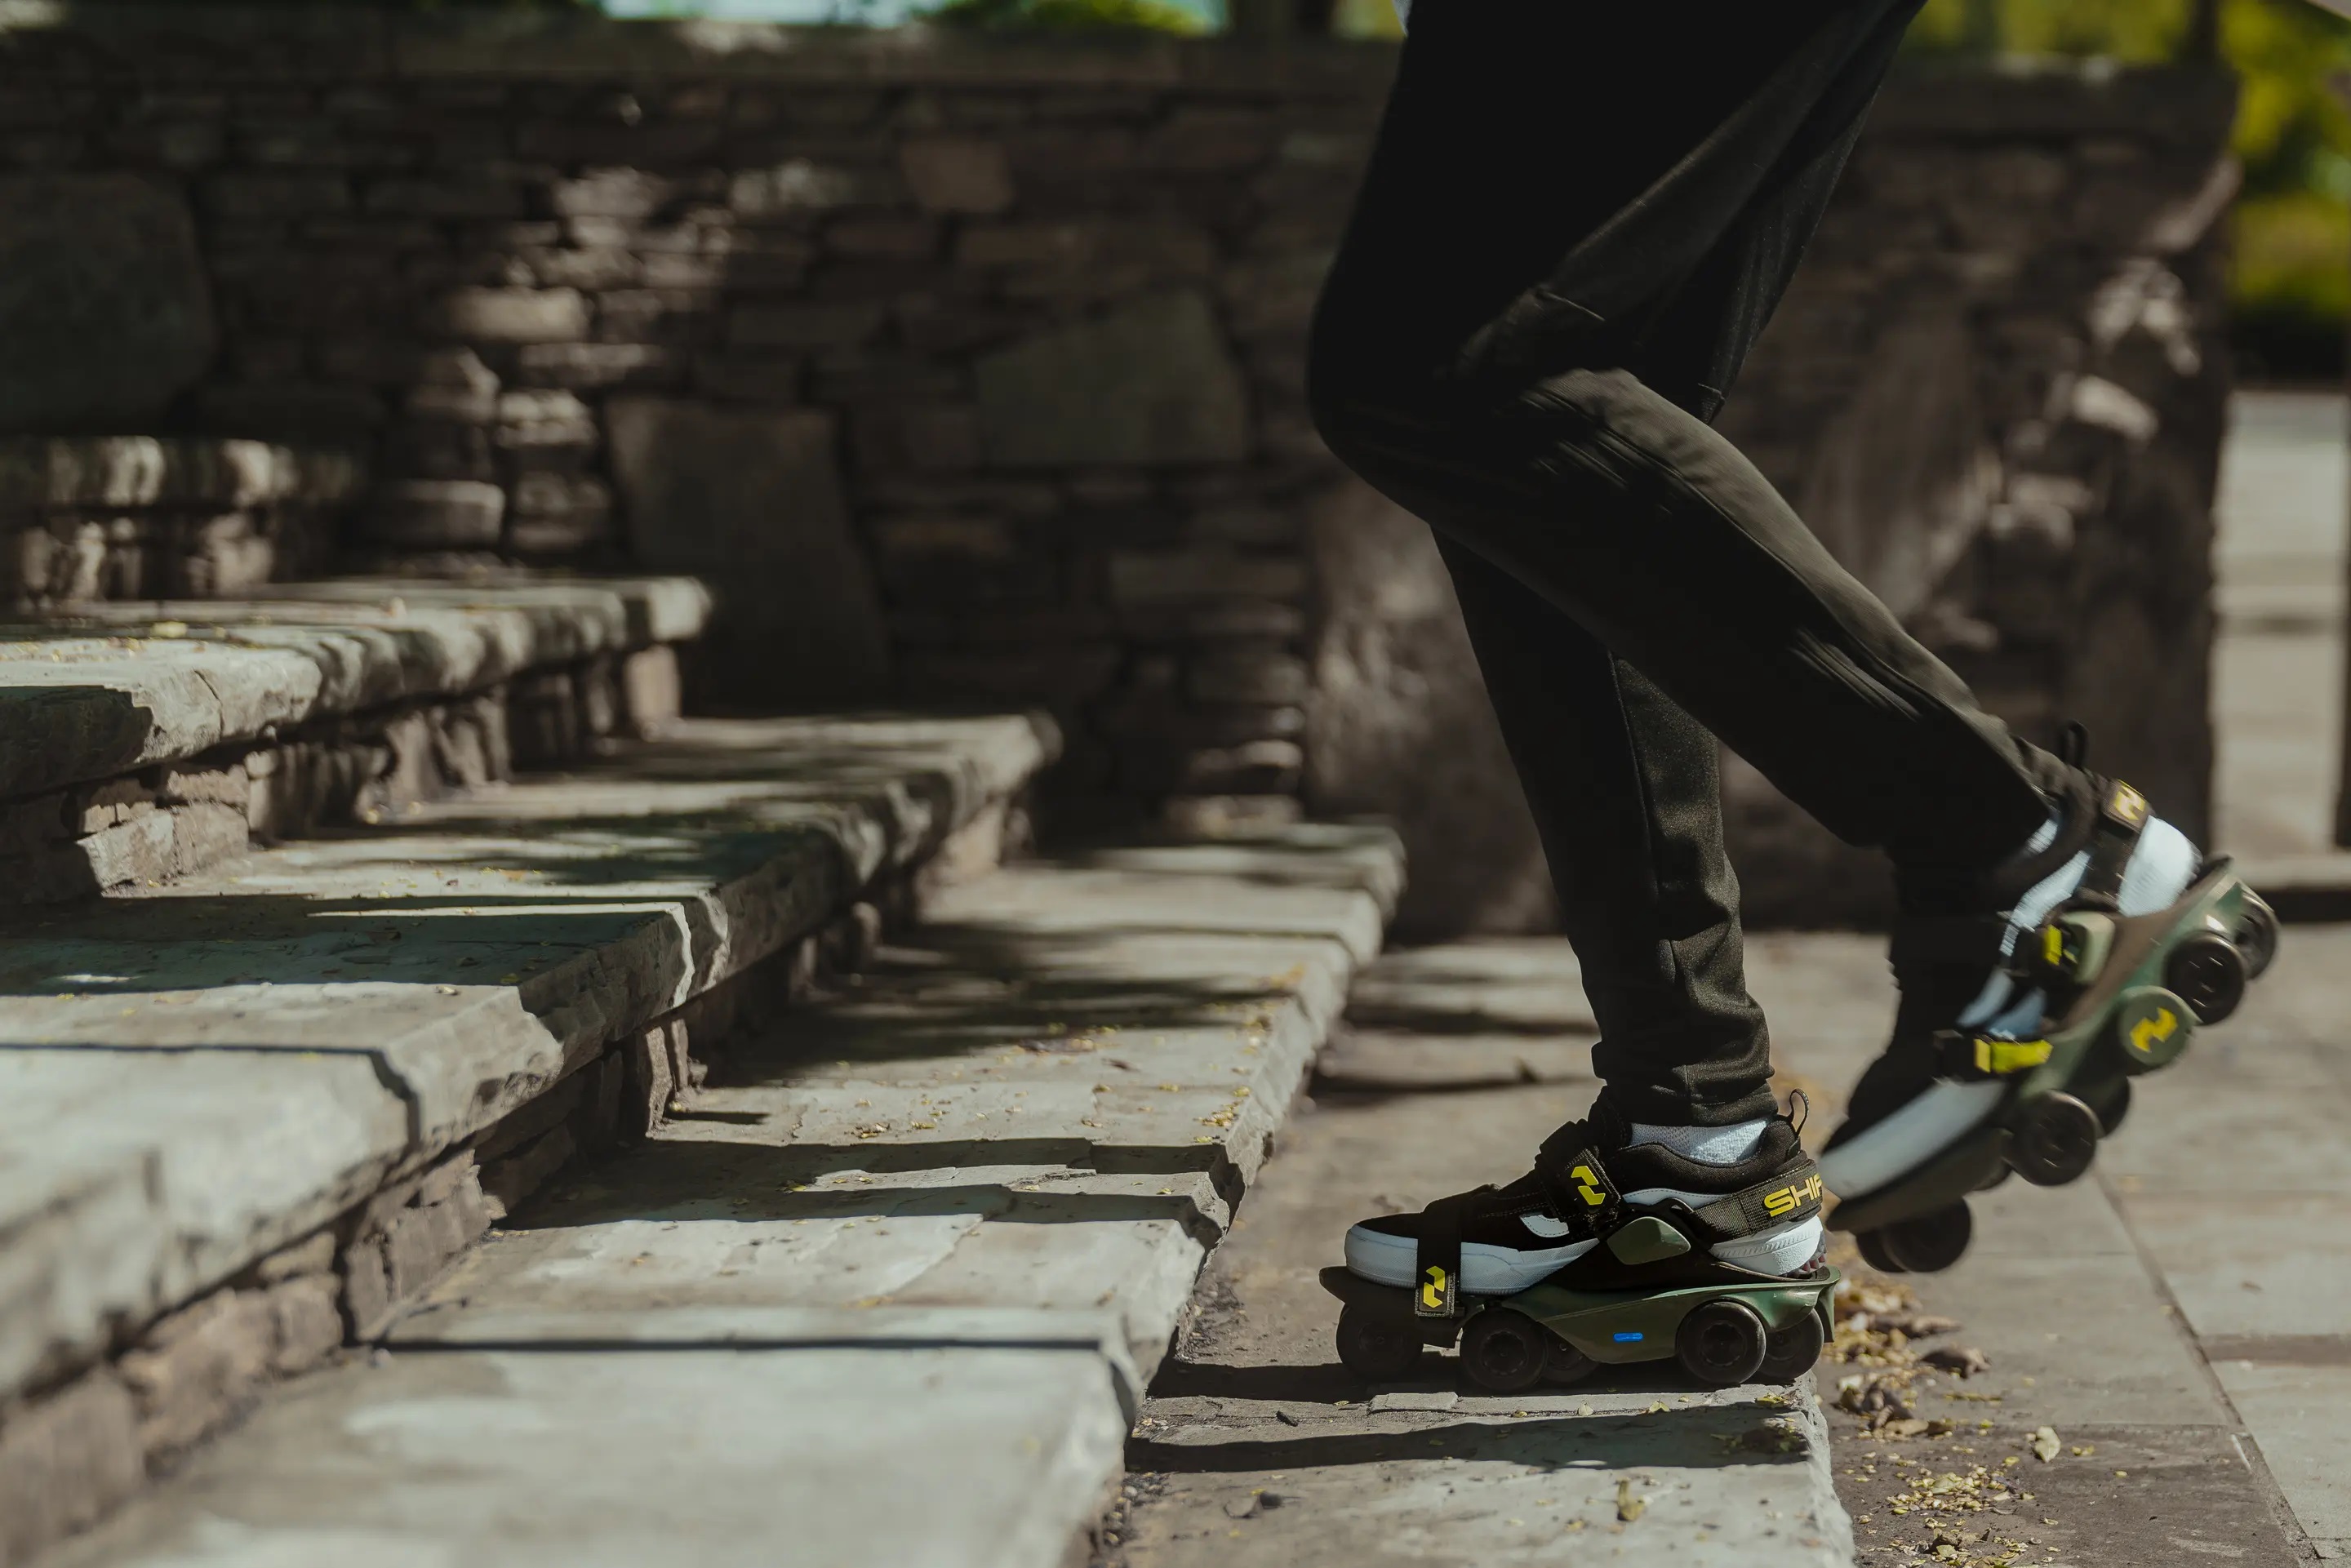 Самая быстрая обувь в мире: на Kickstarter представлены Moonwalkers  роликовые коньки с электродвигателем, которые увеличивают скорость ходьбы на 250